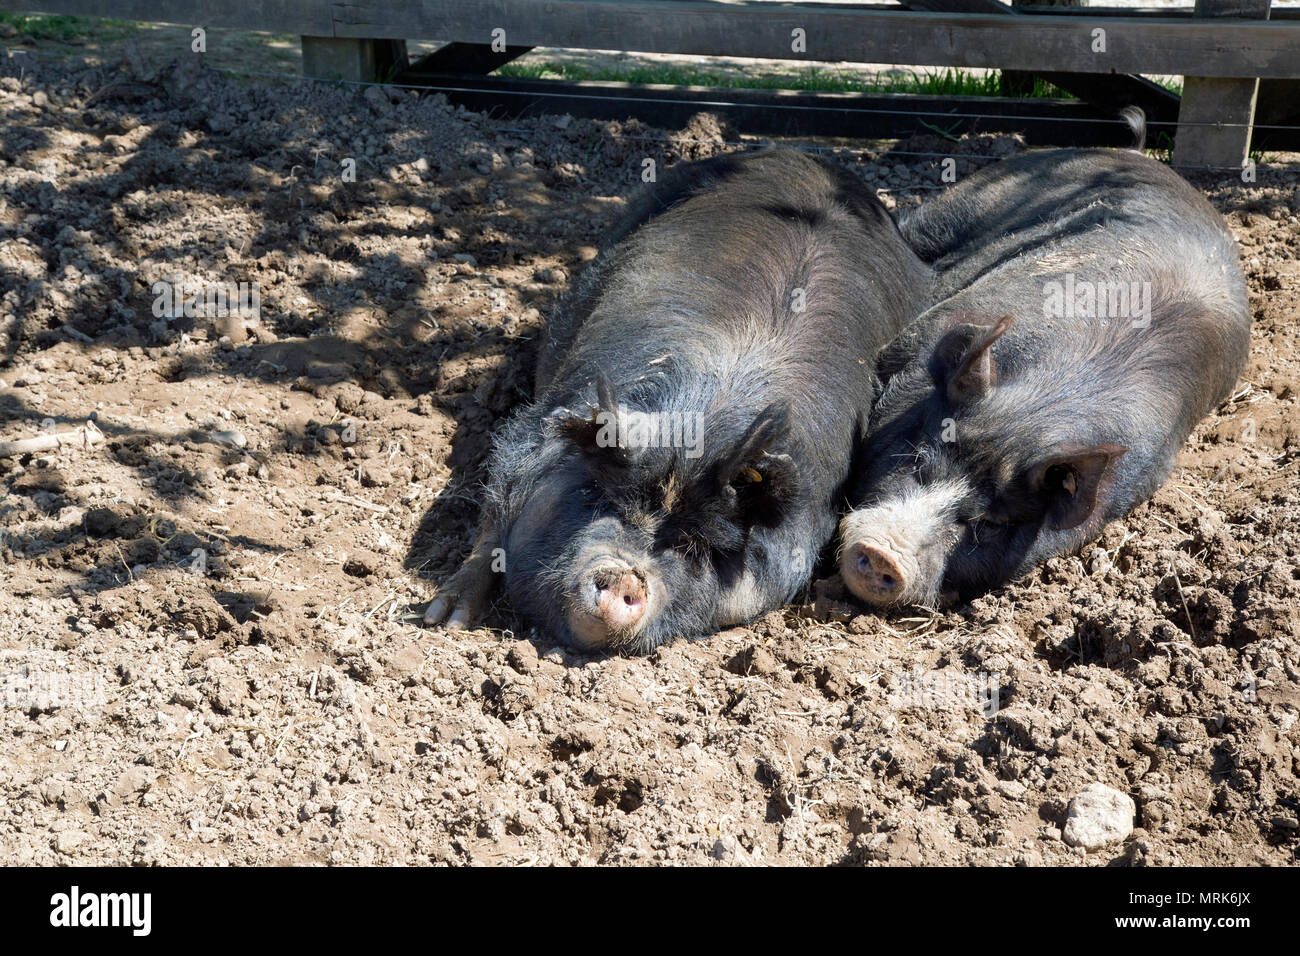 Les porcs aux cheveux noirs dans un champ boueux Banque D'Images